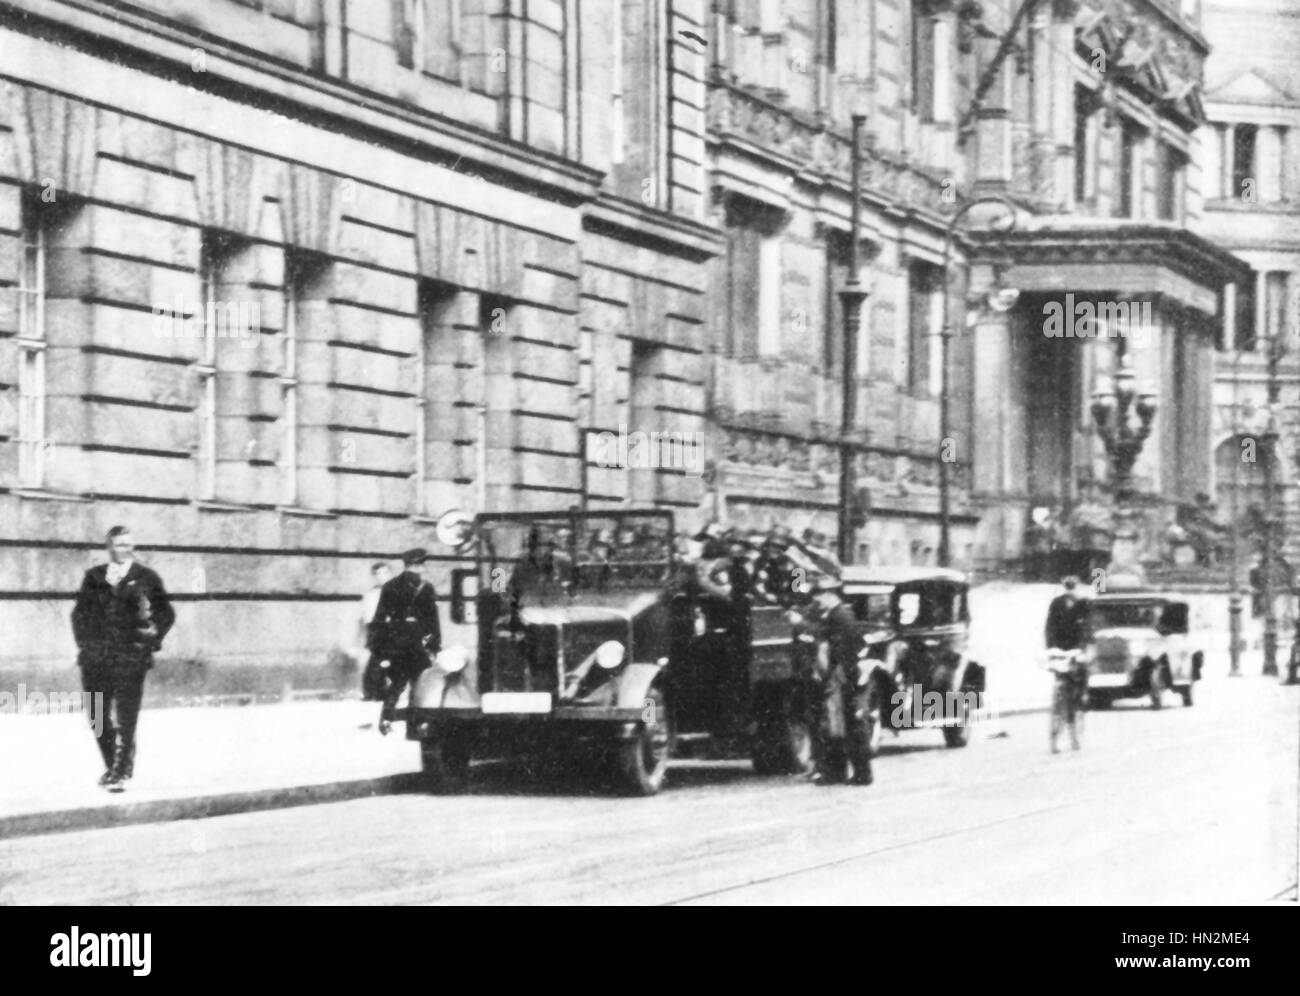 Nuit des longs couteaux. Un commando de la Gestapo dans le Prinz-Albrecht-Strasse, Berlin le 30 juin 1934, Allemagne Banque D'Images